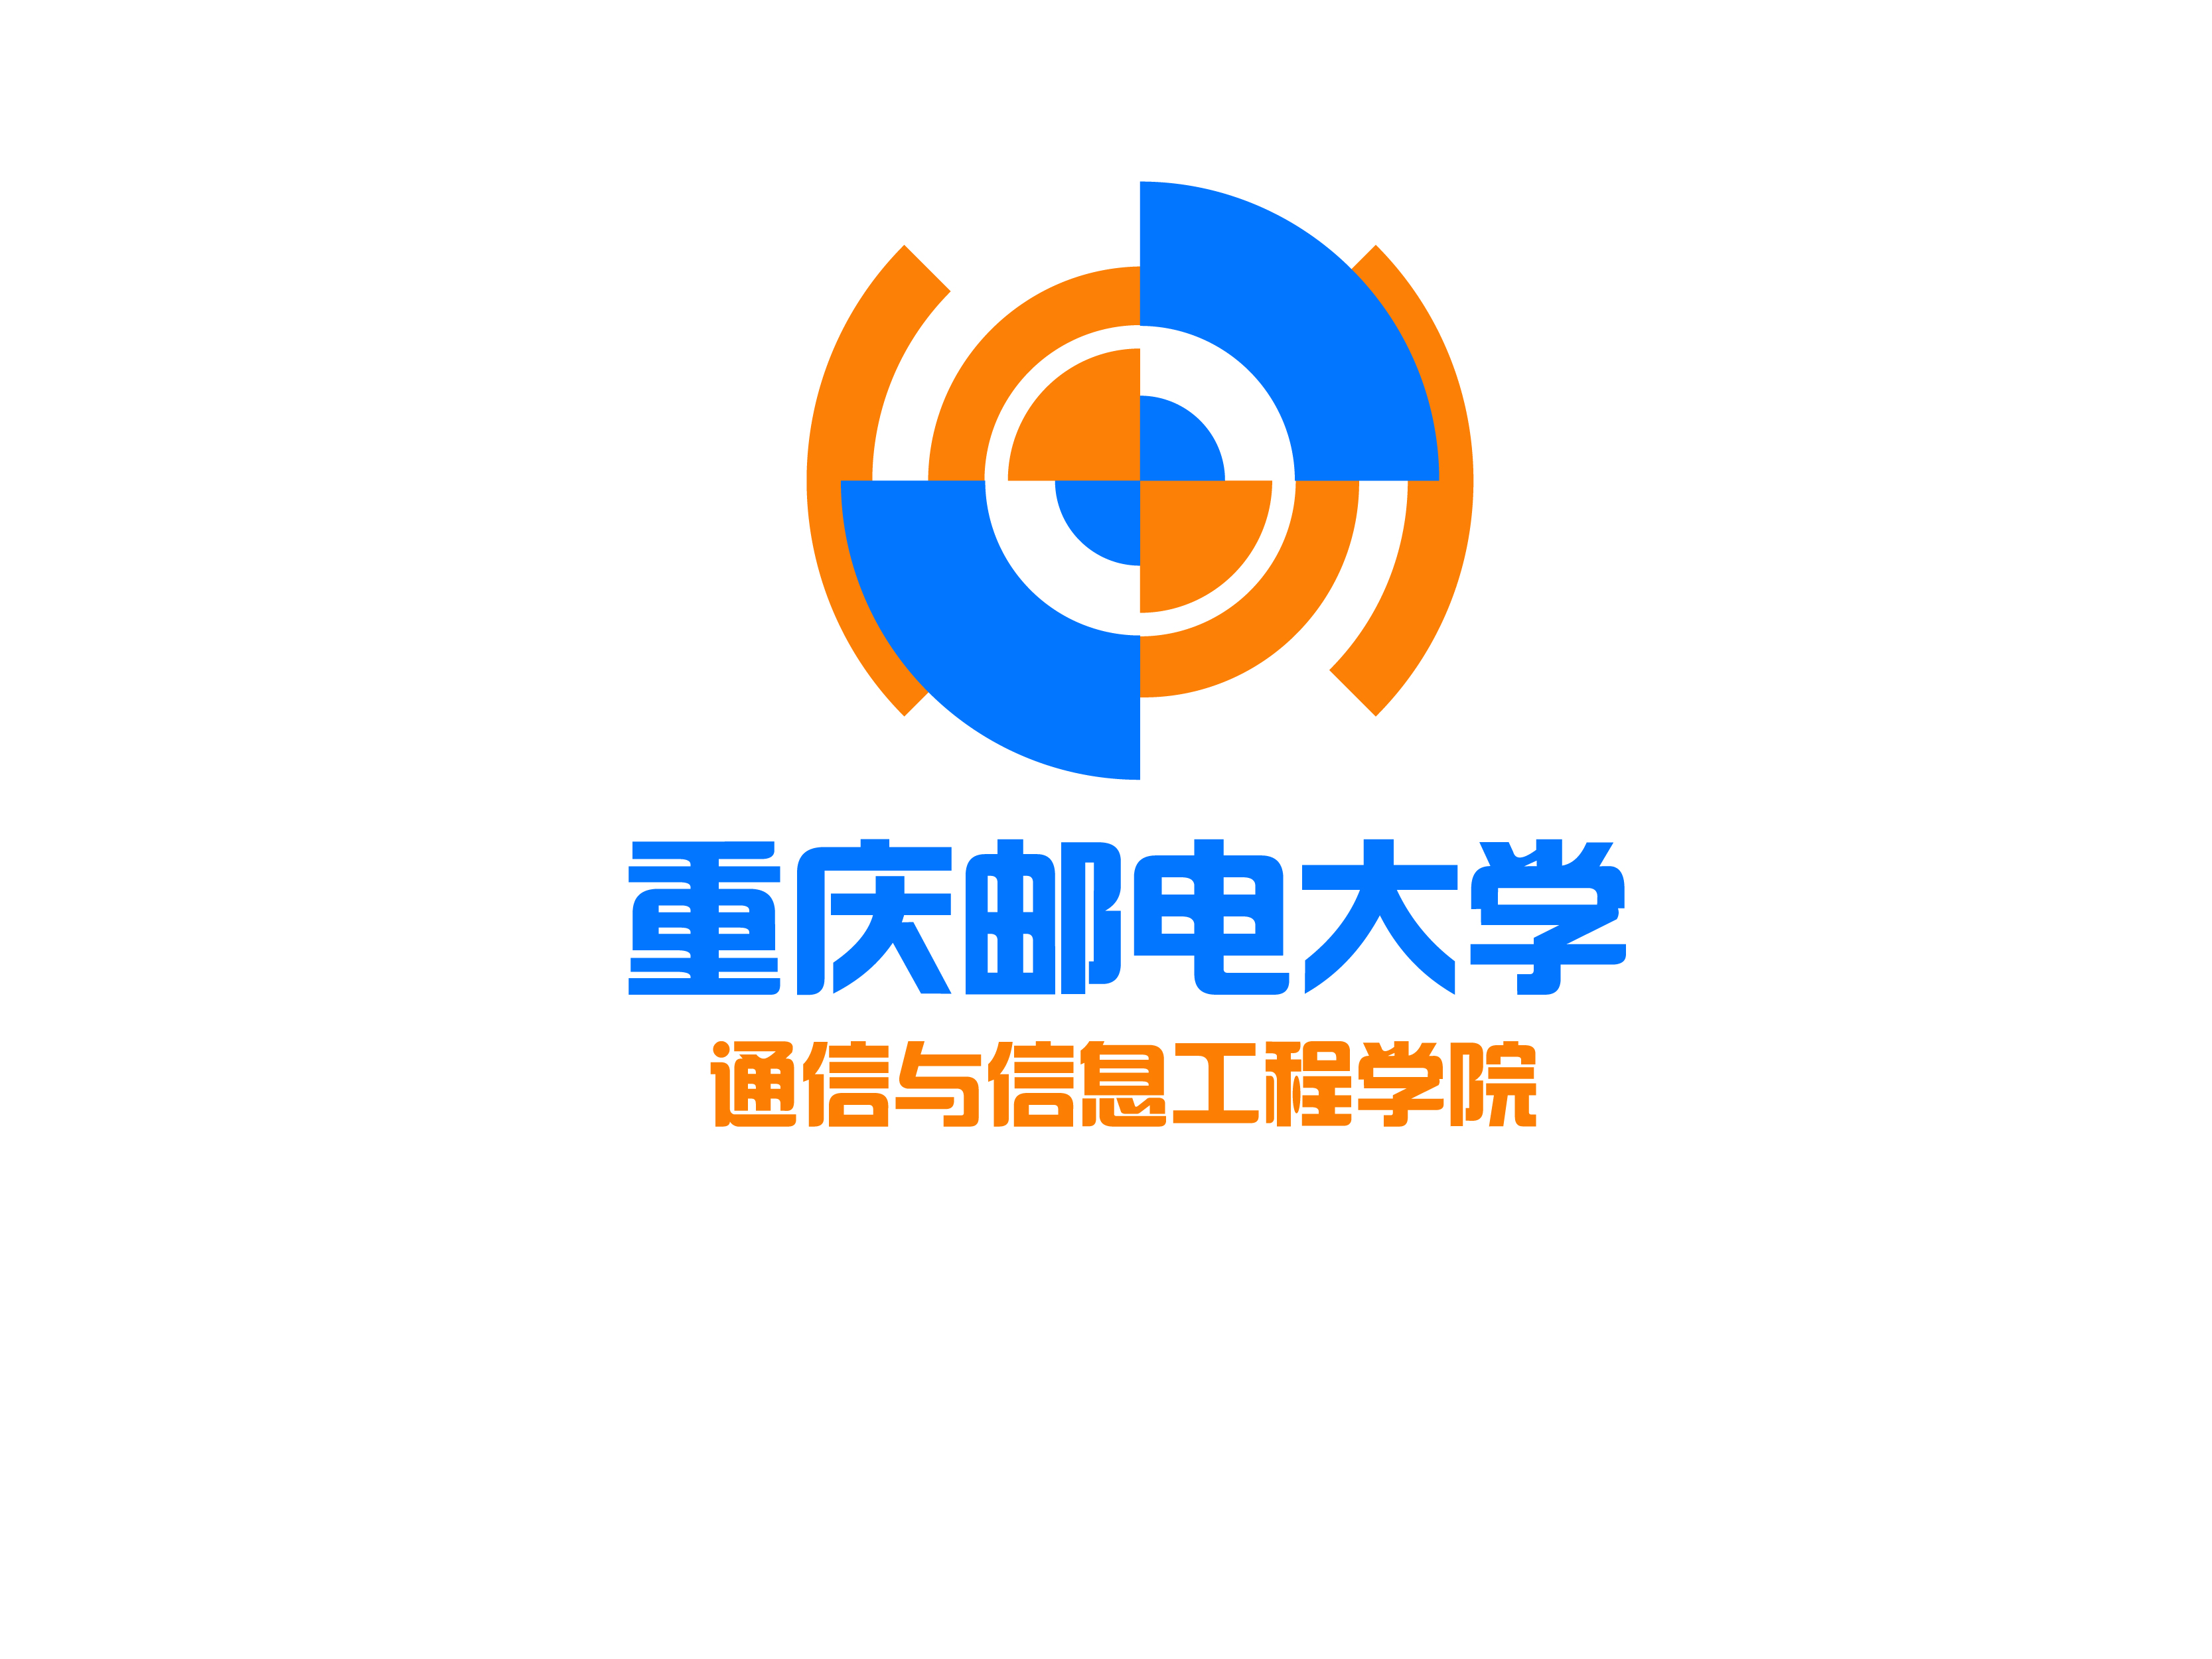 重庆邮电大学通信与信息工程学院院标设计